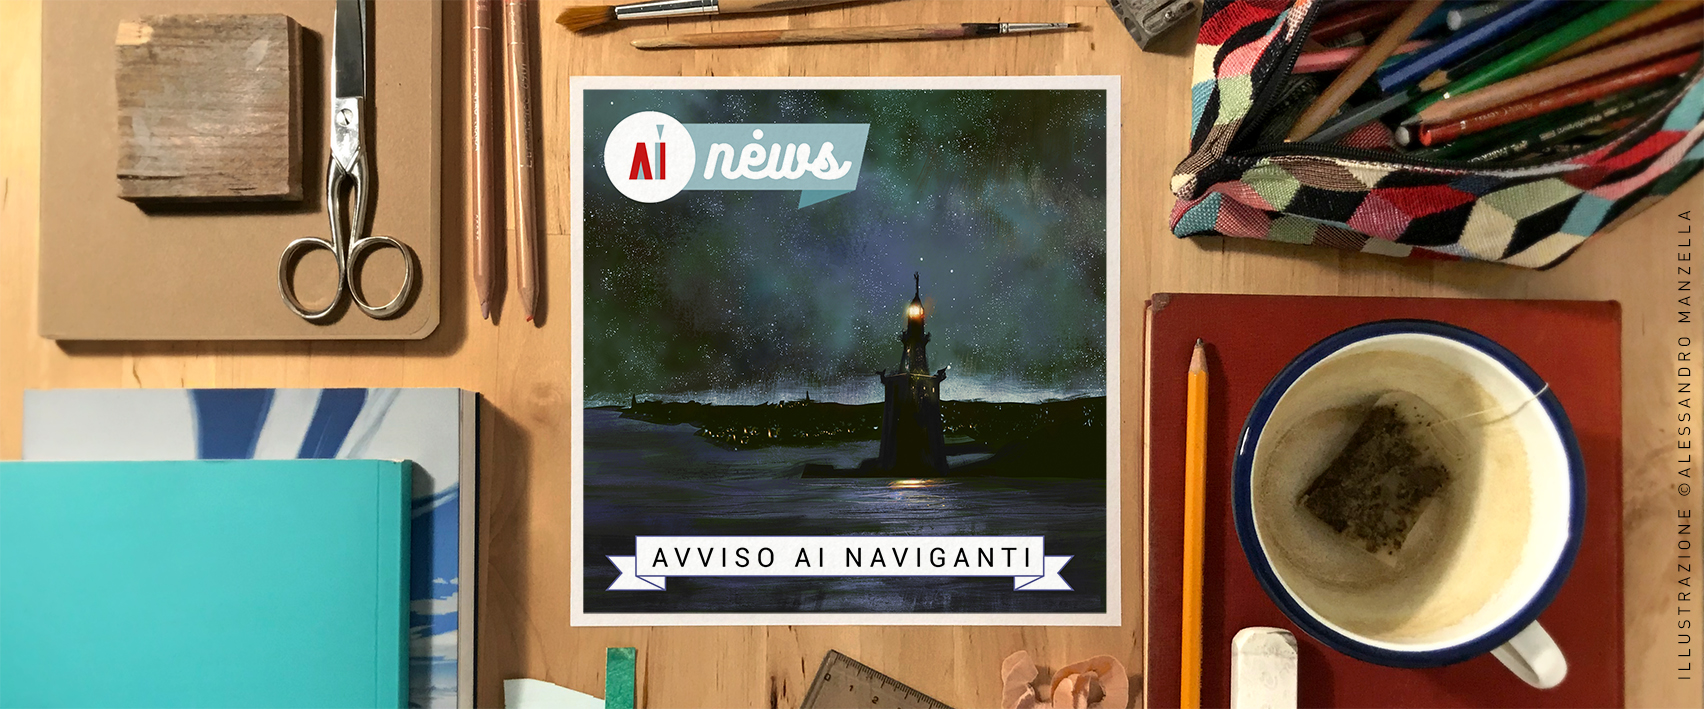 Avviso ai Naviganti 02 - Alessandro Manzella